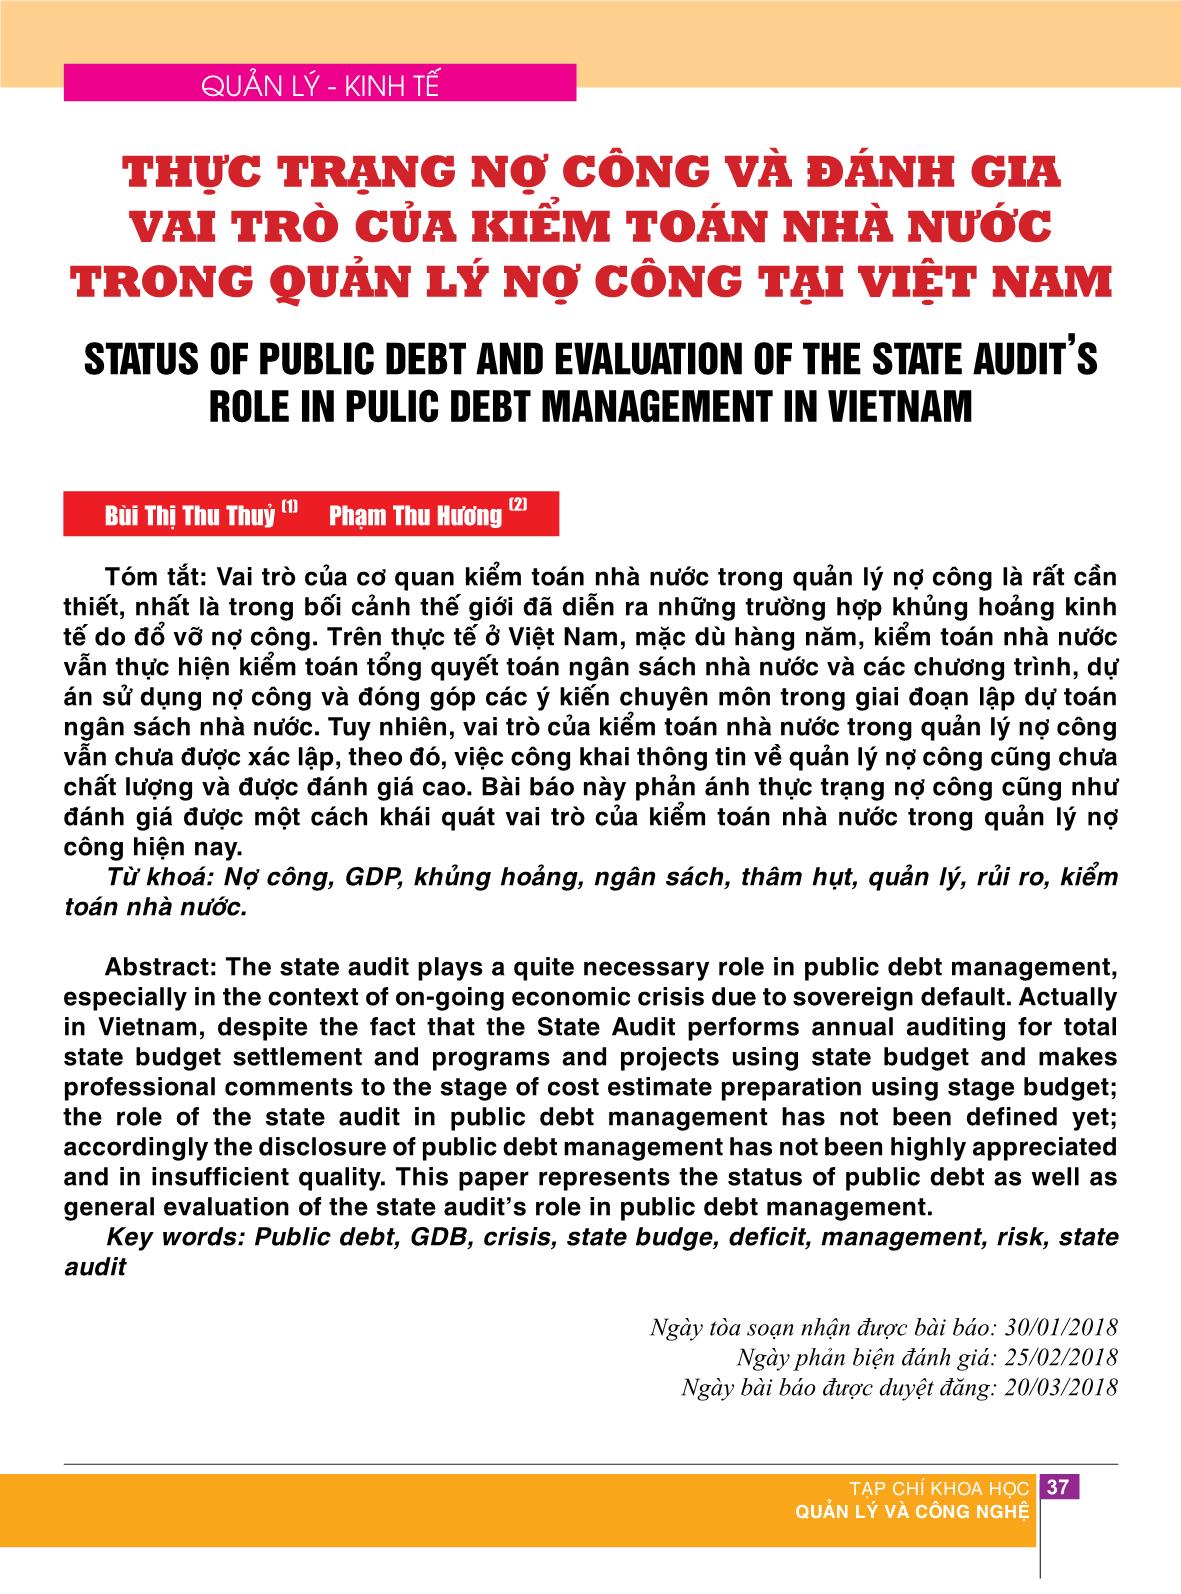 Thực trạng nợ công và đánh gia vai trò của kiểm toán nhà nước trong quản lý nợ công tại Việt Nam trang 1